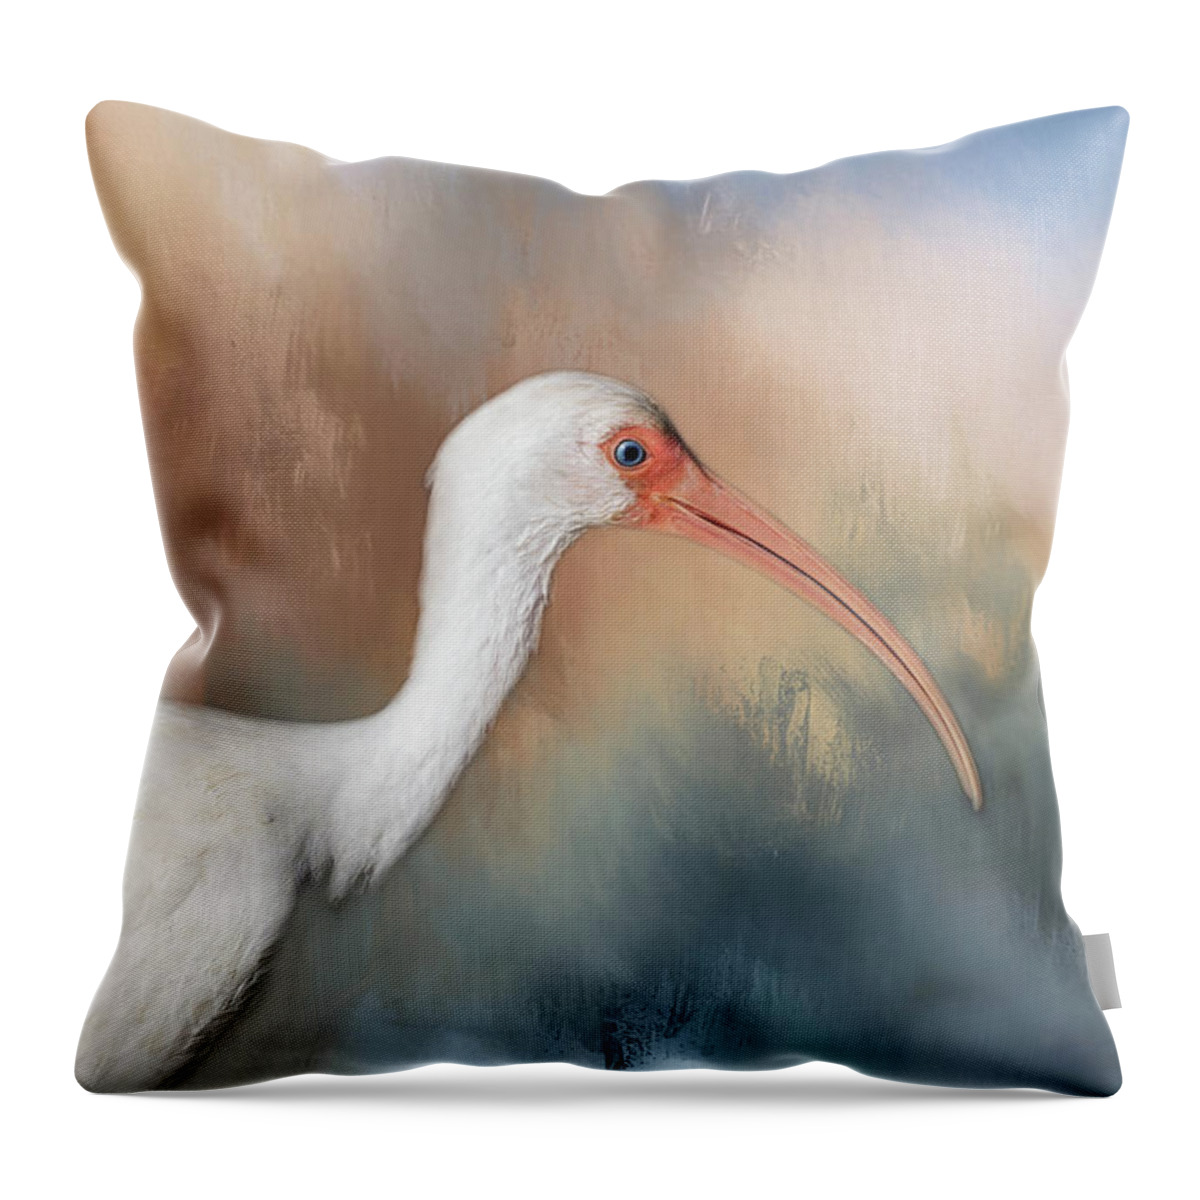 Ibis Throw Pillow featuring the photograph White Ibis - 2 by Kim Hojnacki